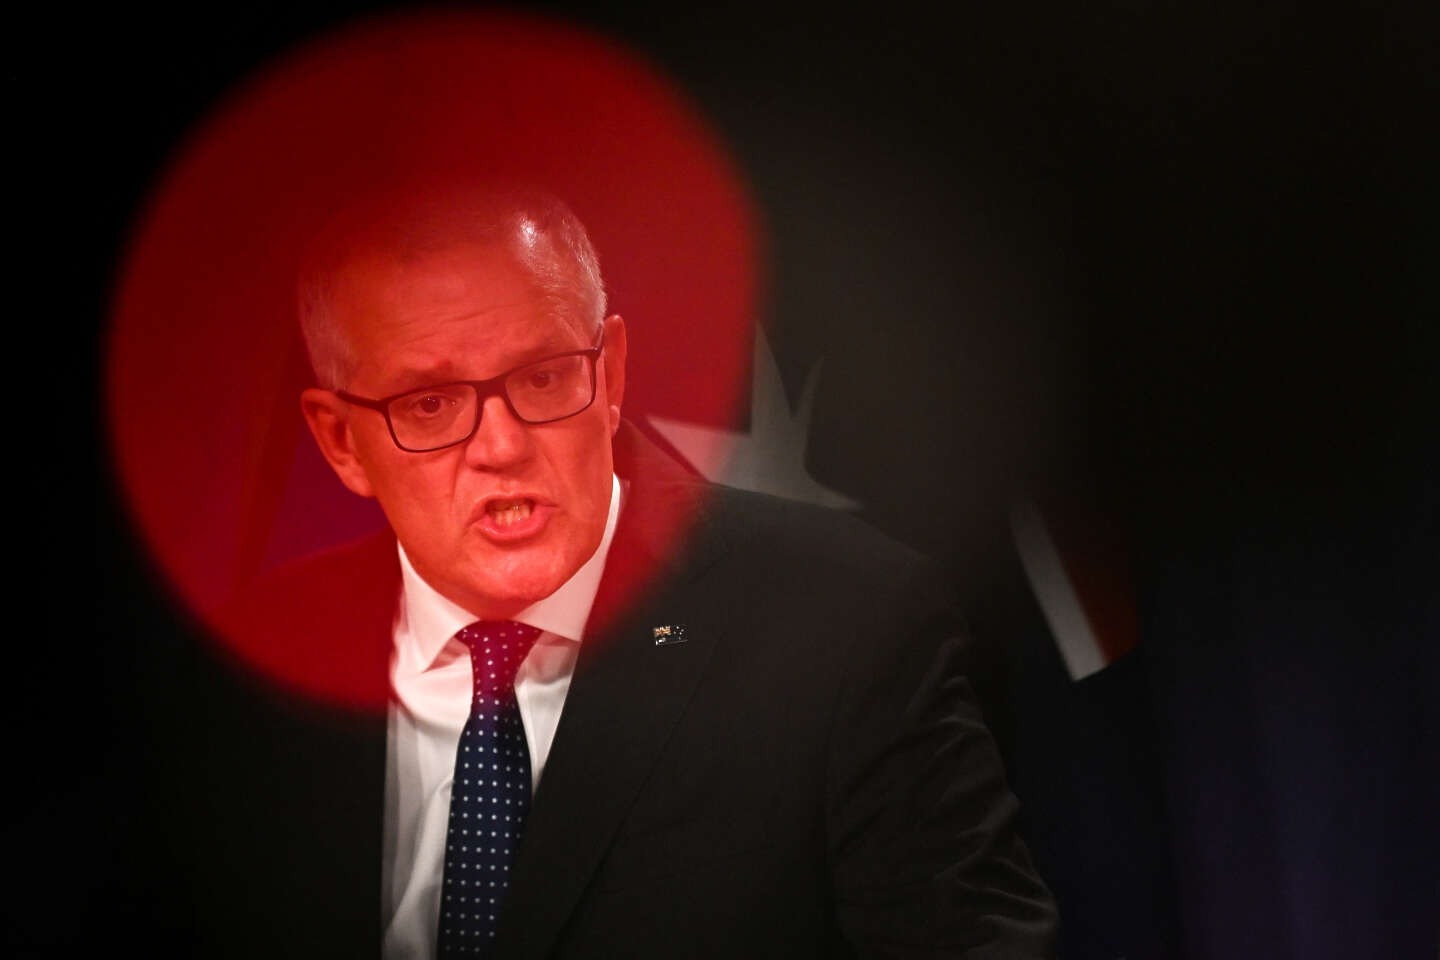 Comment Scott Morrison, ex-premier ministre australien « accro au pouvoir », s’était attribué secrètement cinq portefeuilles ministériels